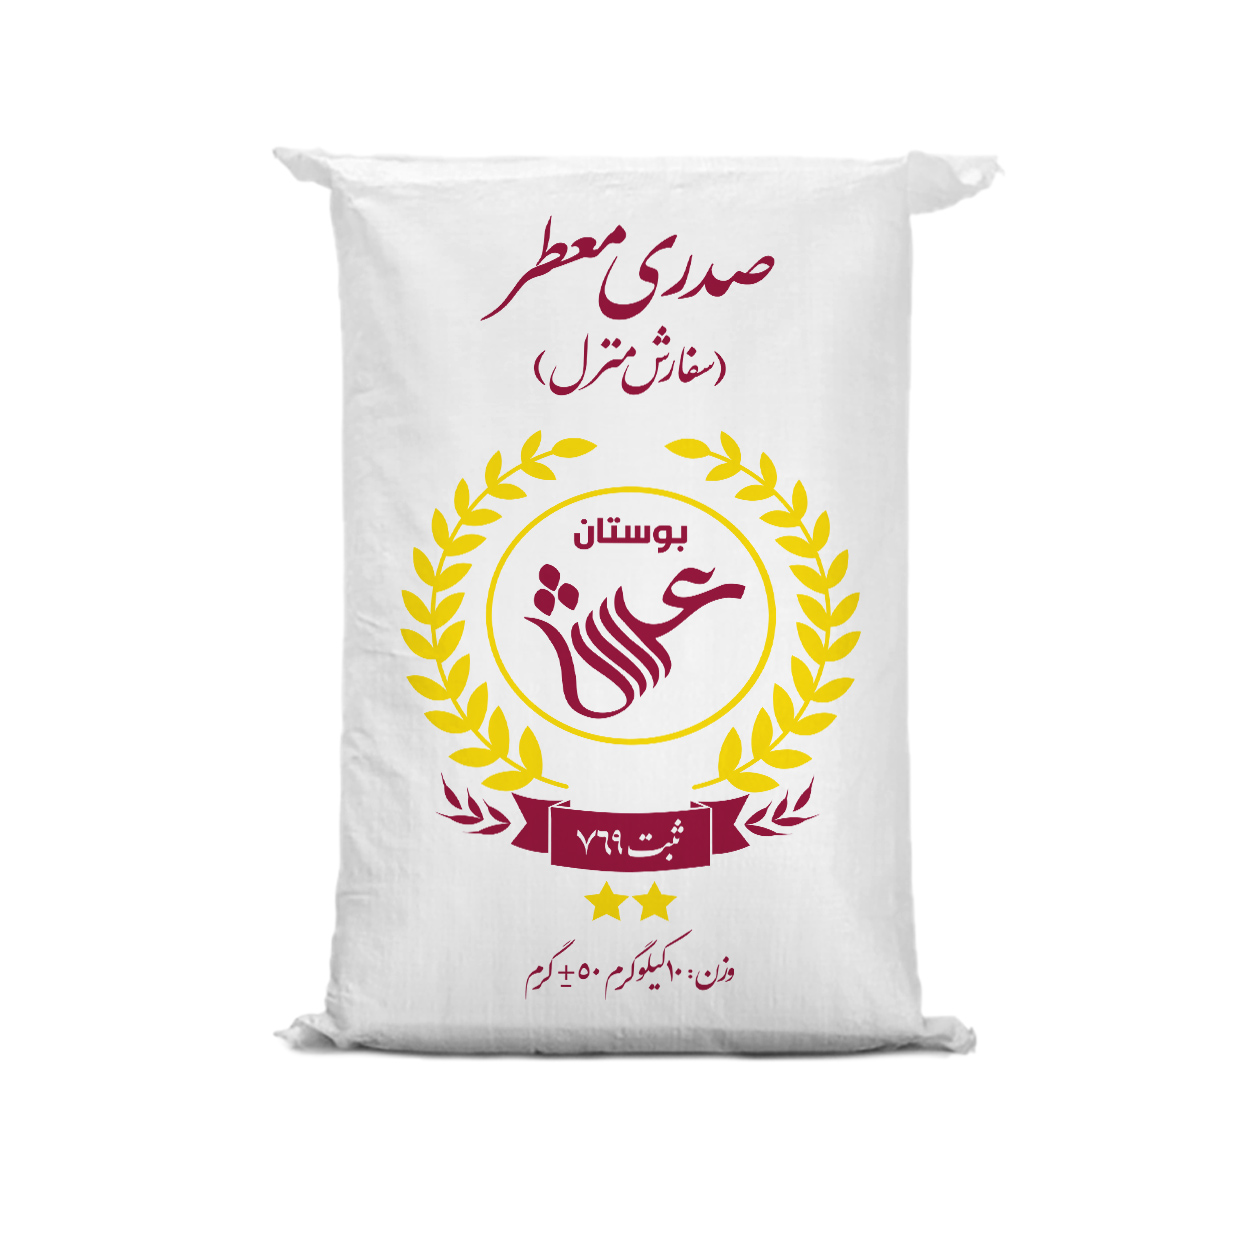 نکته خرید - قیمت روز برنج ایرانی صدری معطر گلستان بوستان عرش - 10 کیلوگرم خرید